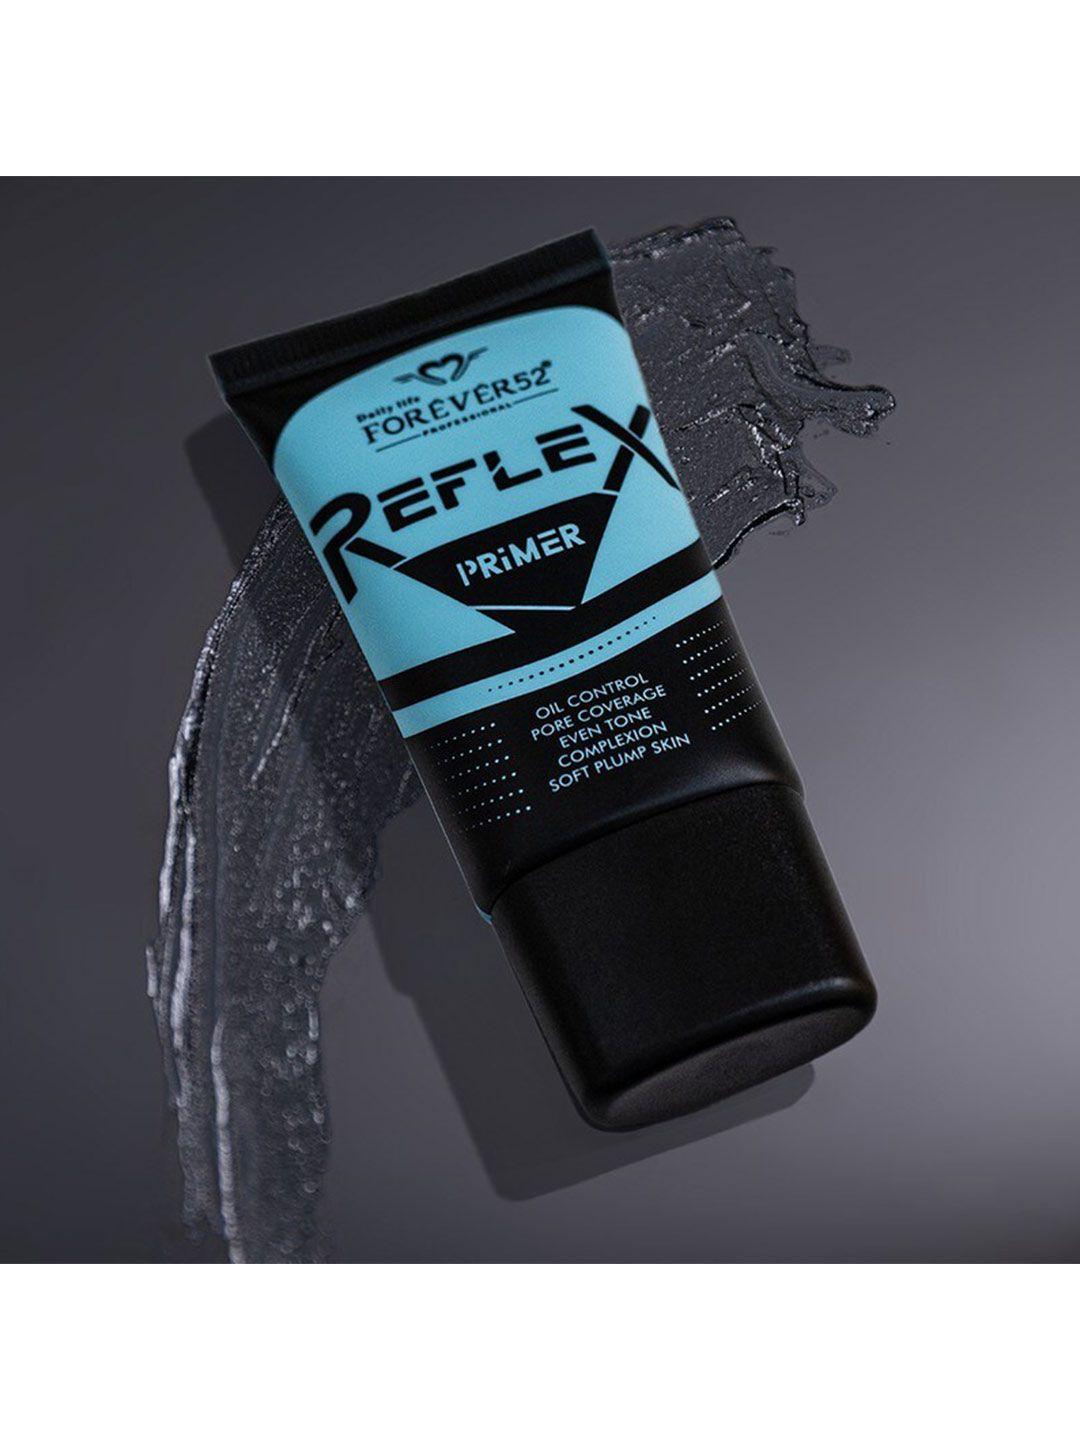 daily life forever52 reflex oil-control & pore coverage cruelty-free primer 20 ml - rxp001